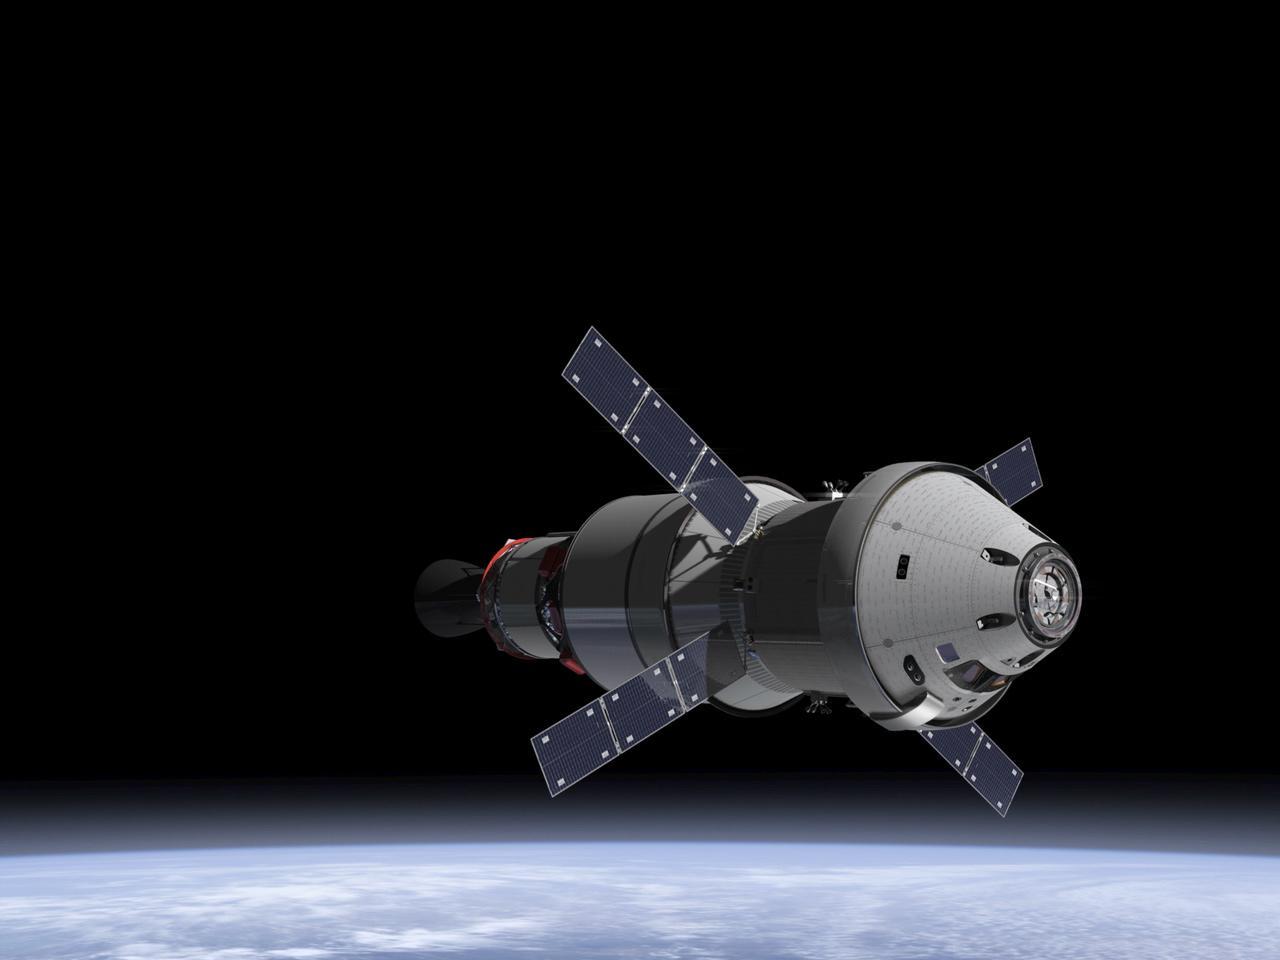  Az Orion űrhajó fejlesztését is felpörgetik